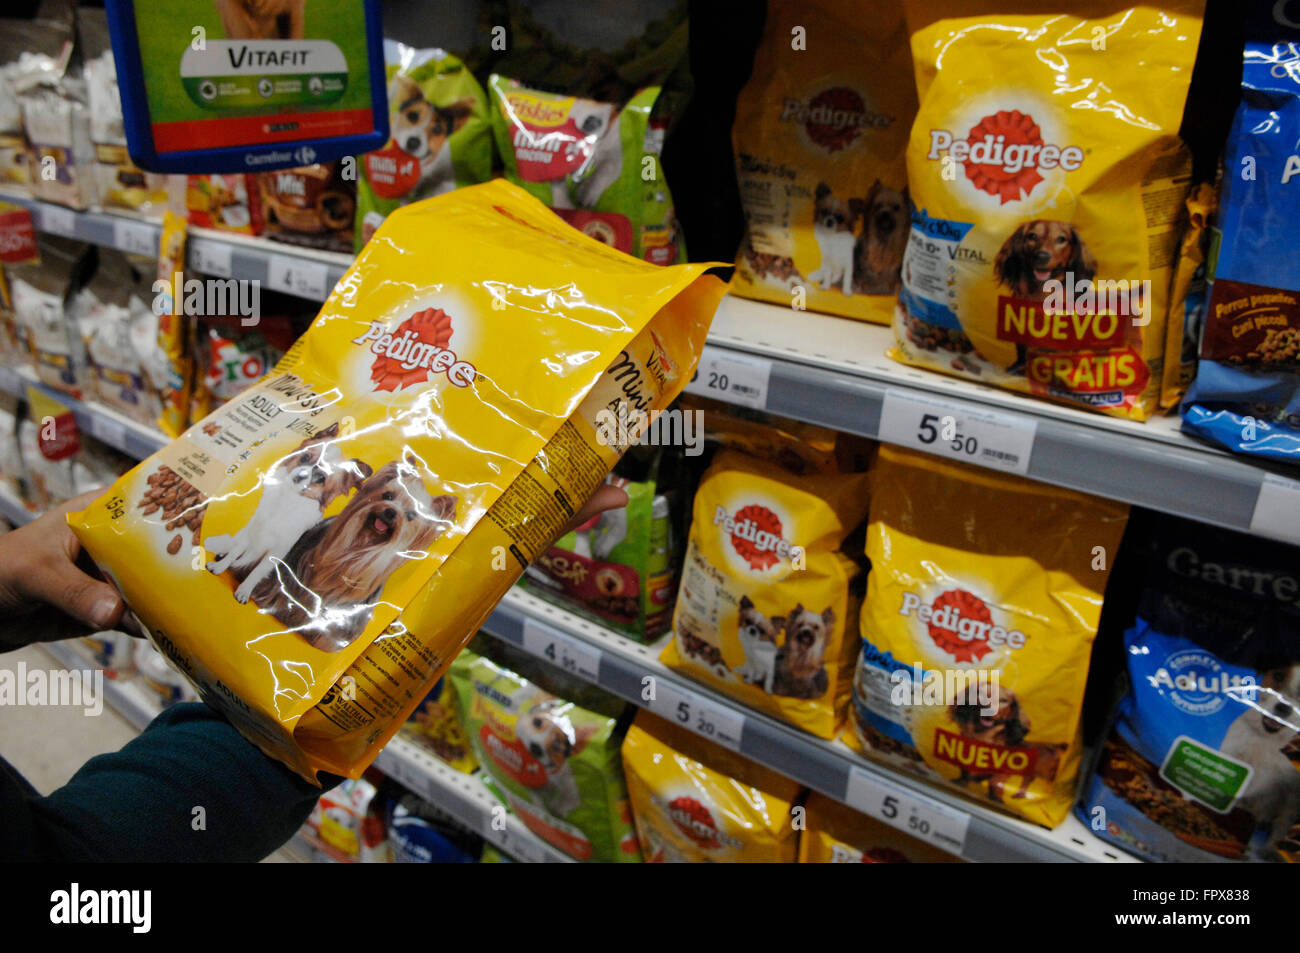 La Nourriture pour chiens Pedigree en vente dans un supermarché Carrefour à Malaga en Espagne. Banque D'Images